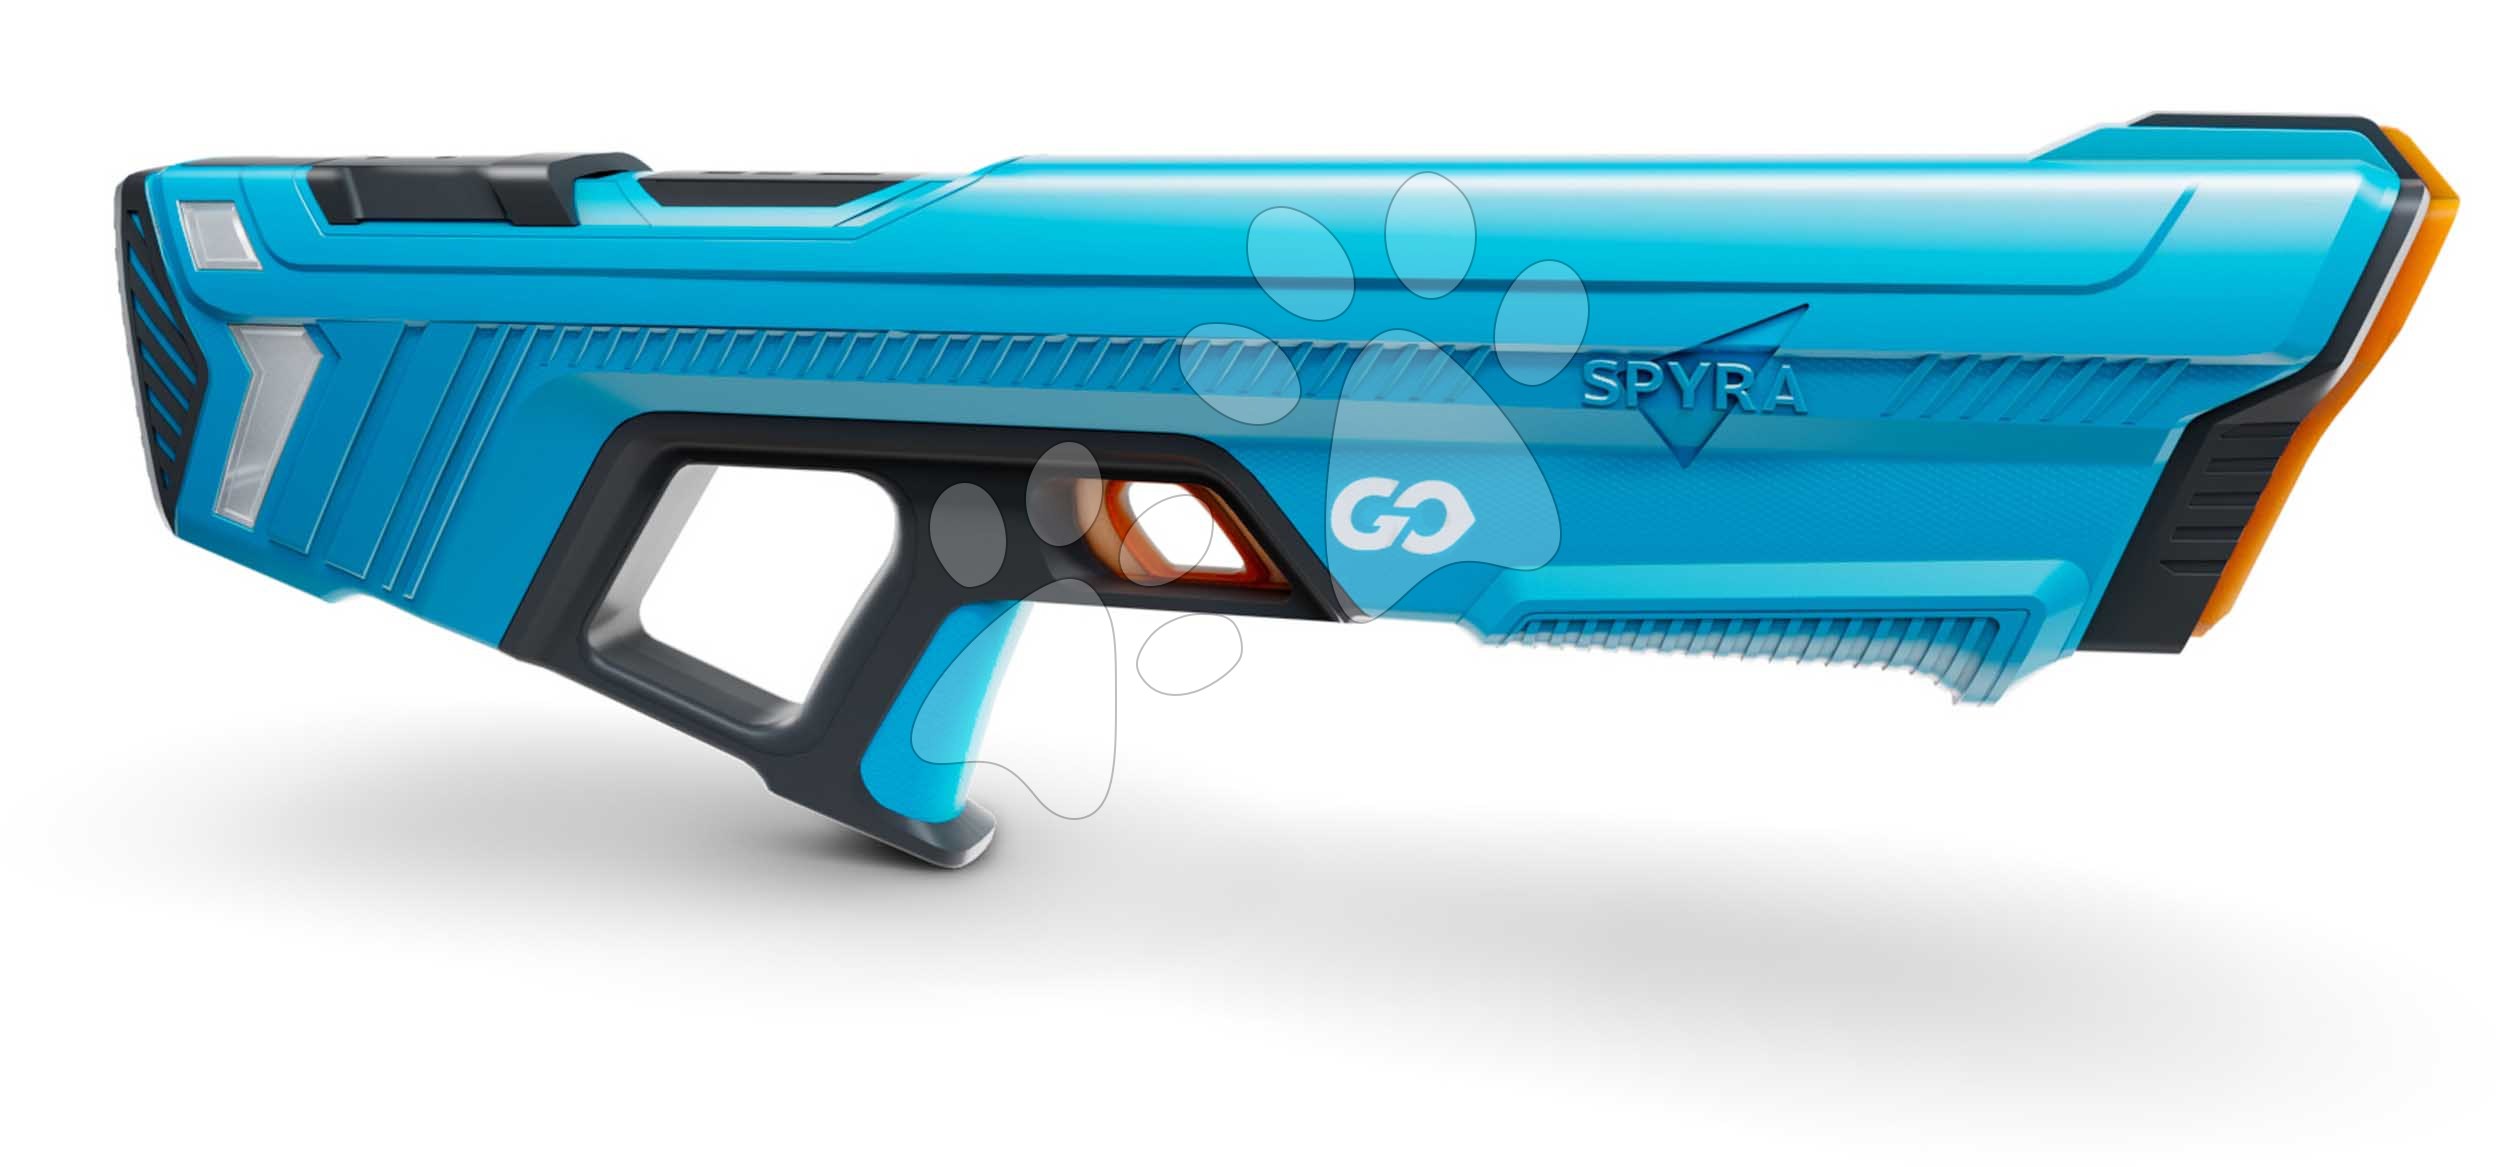 Vodní pistole s manuálním nabíjením vodou SpyraGO Blue Spyra s elektronickým indikátorem stavu baterie a dostřelem 8 metrů modrá od 8 let